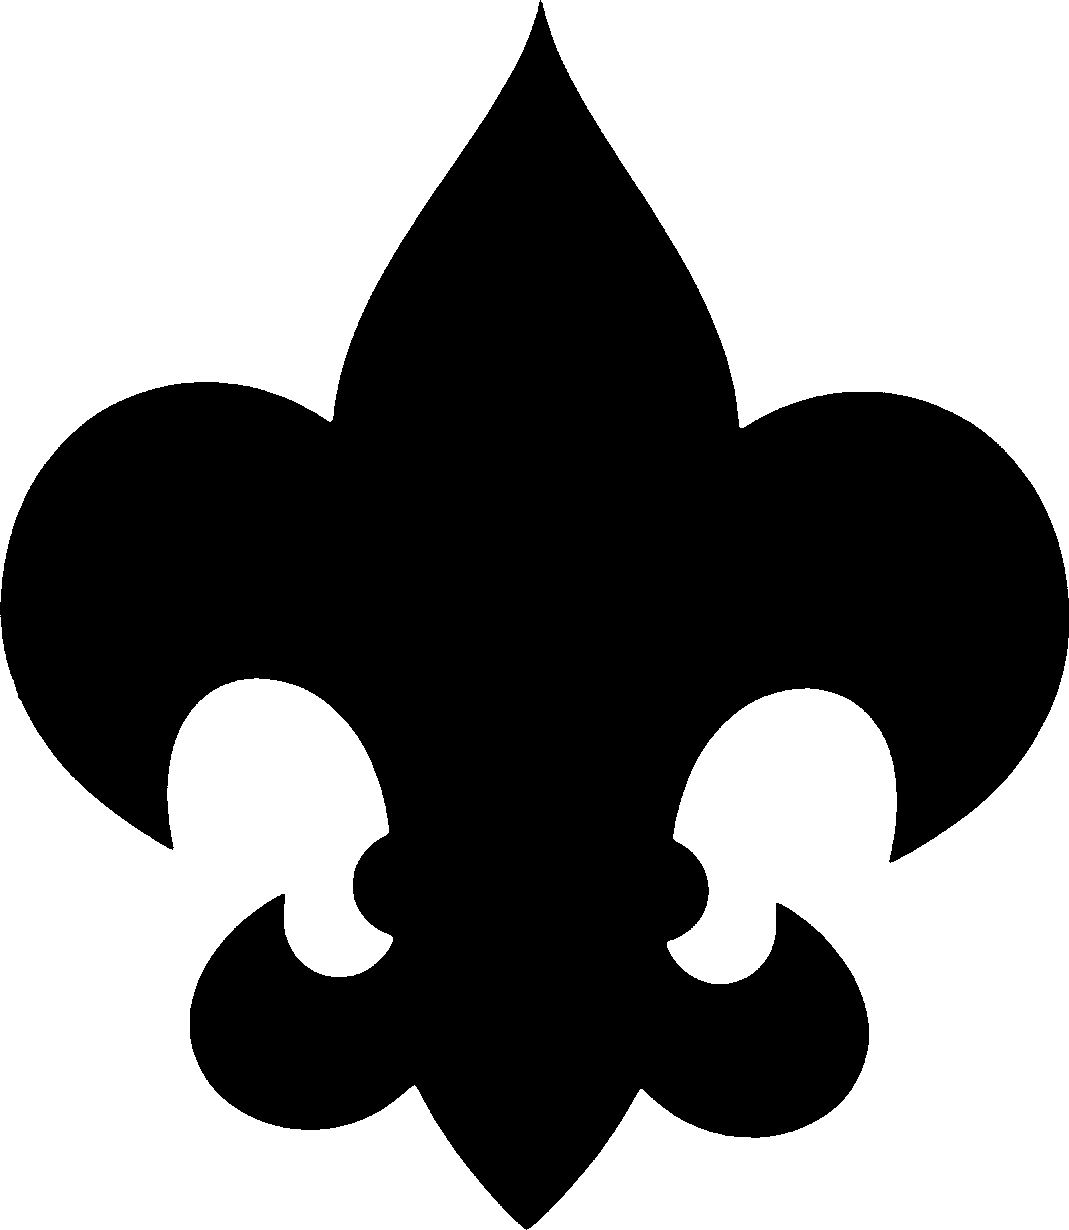 boy scout logo clip art free - photo #10